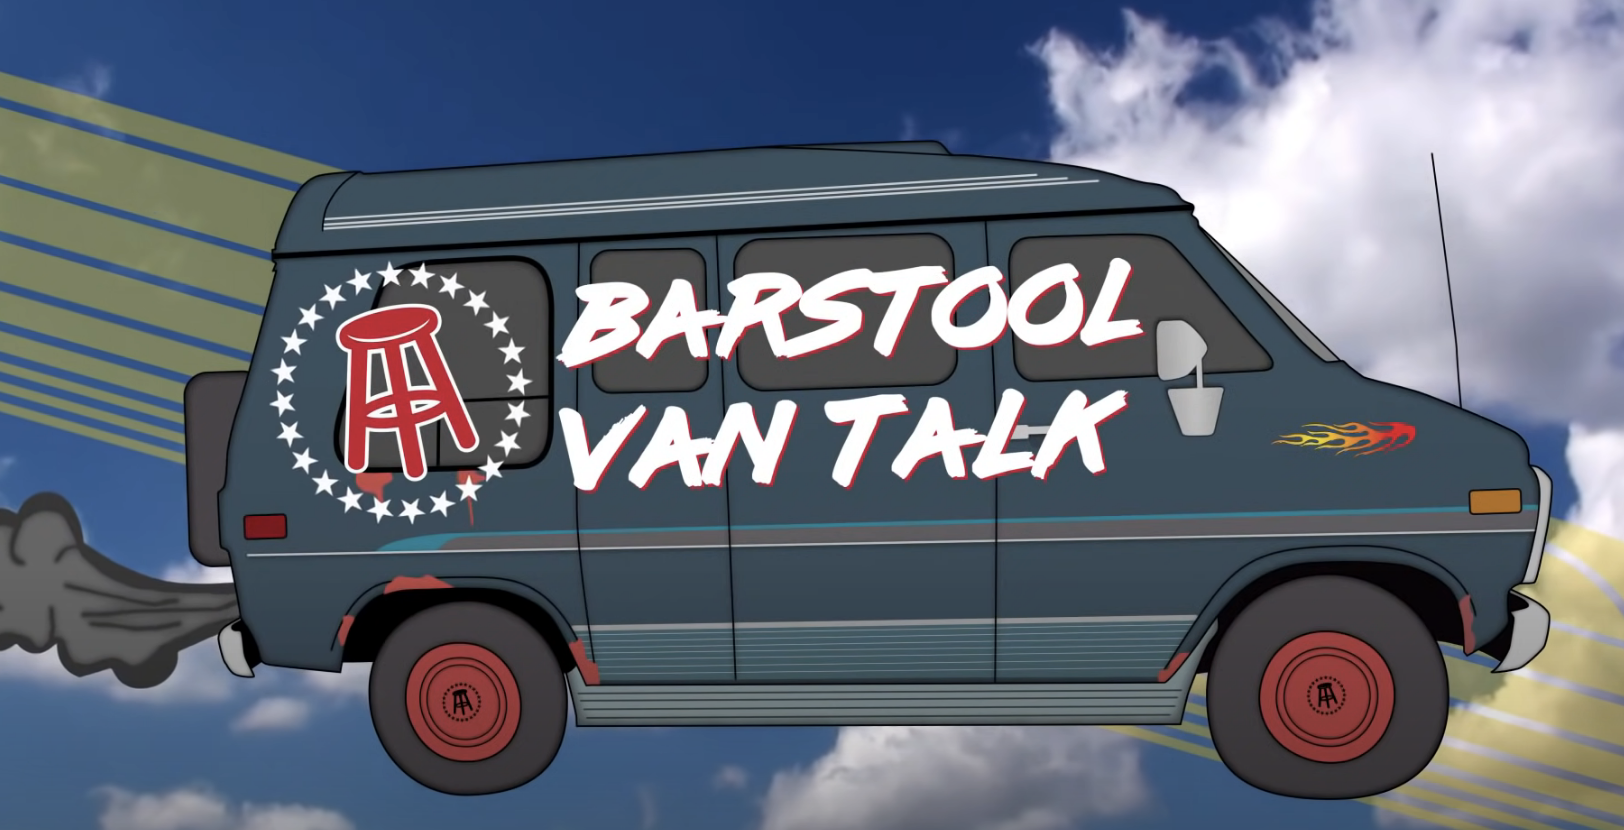 cartoon drawing of a van with text barstool van talk